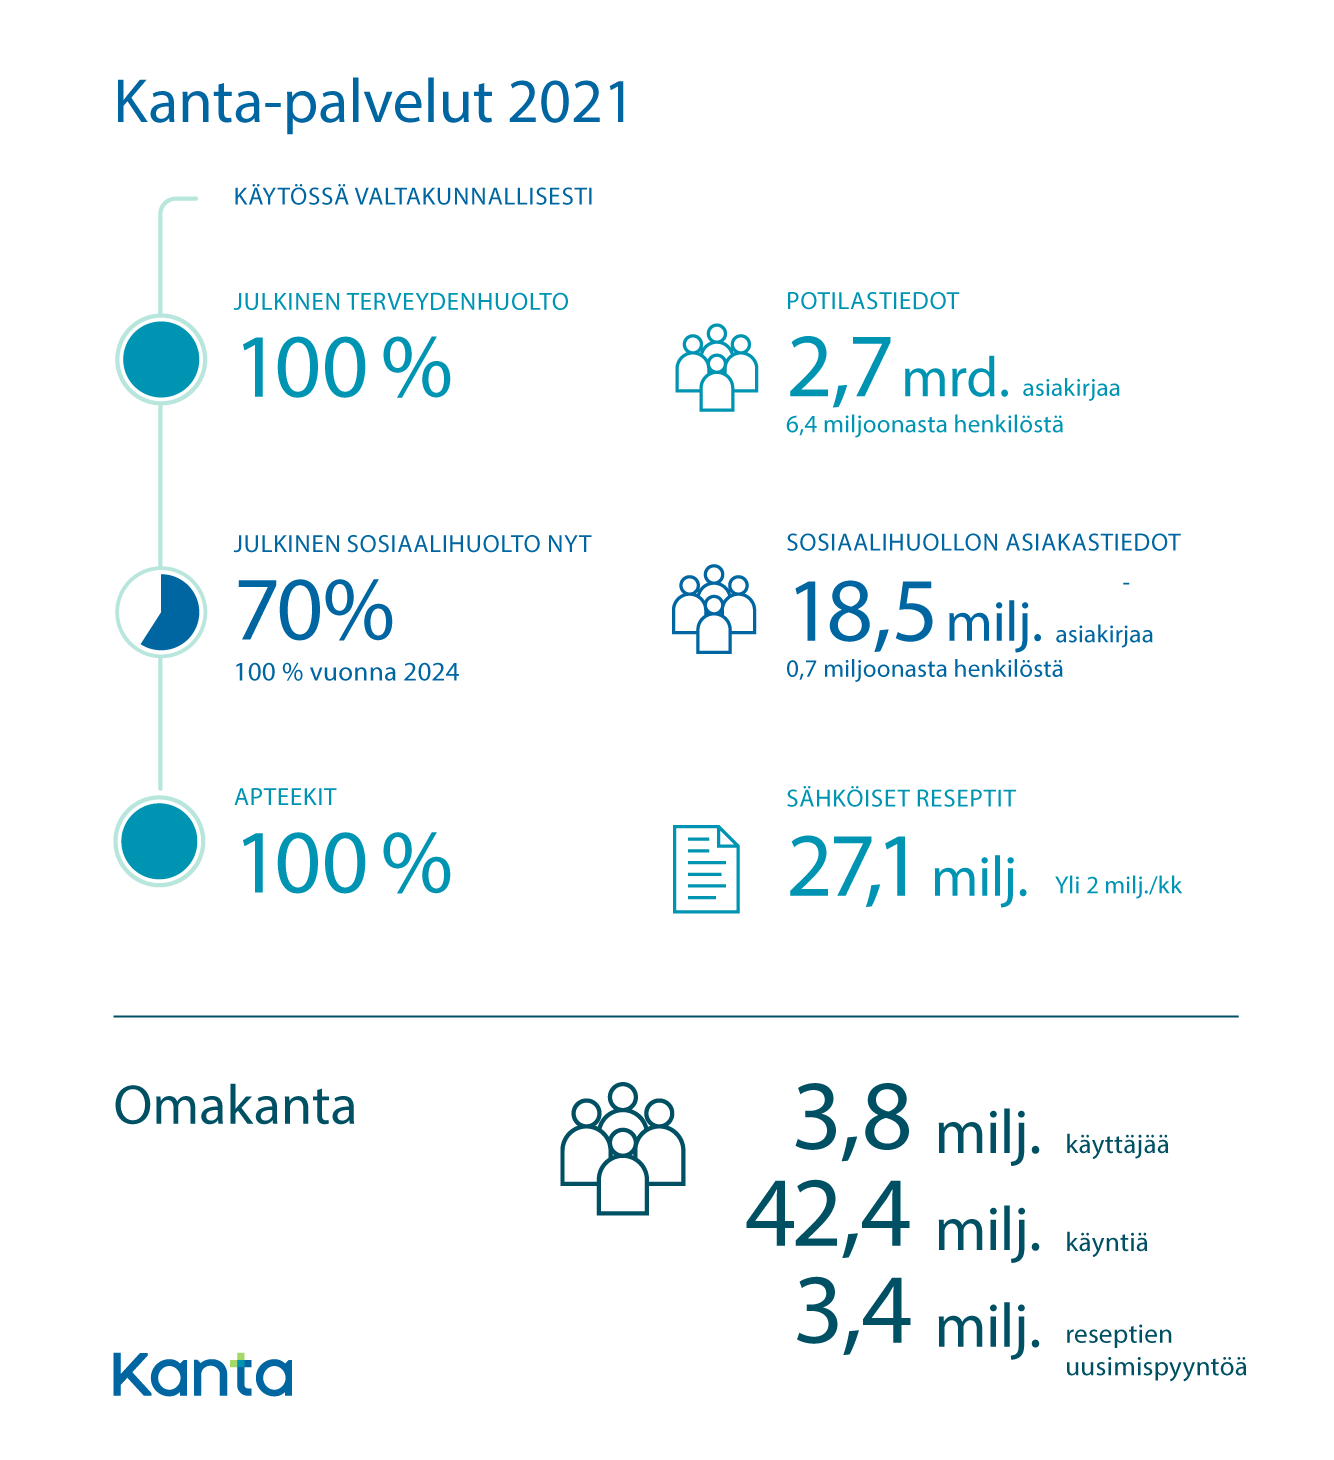 Kanta-palveluiden avainluvut 2021